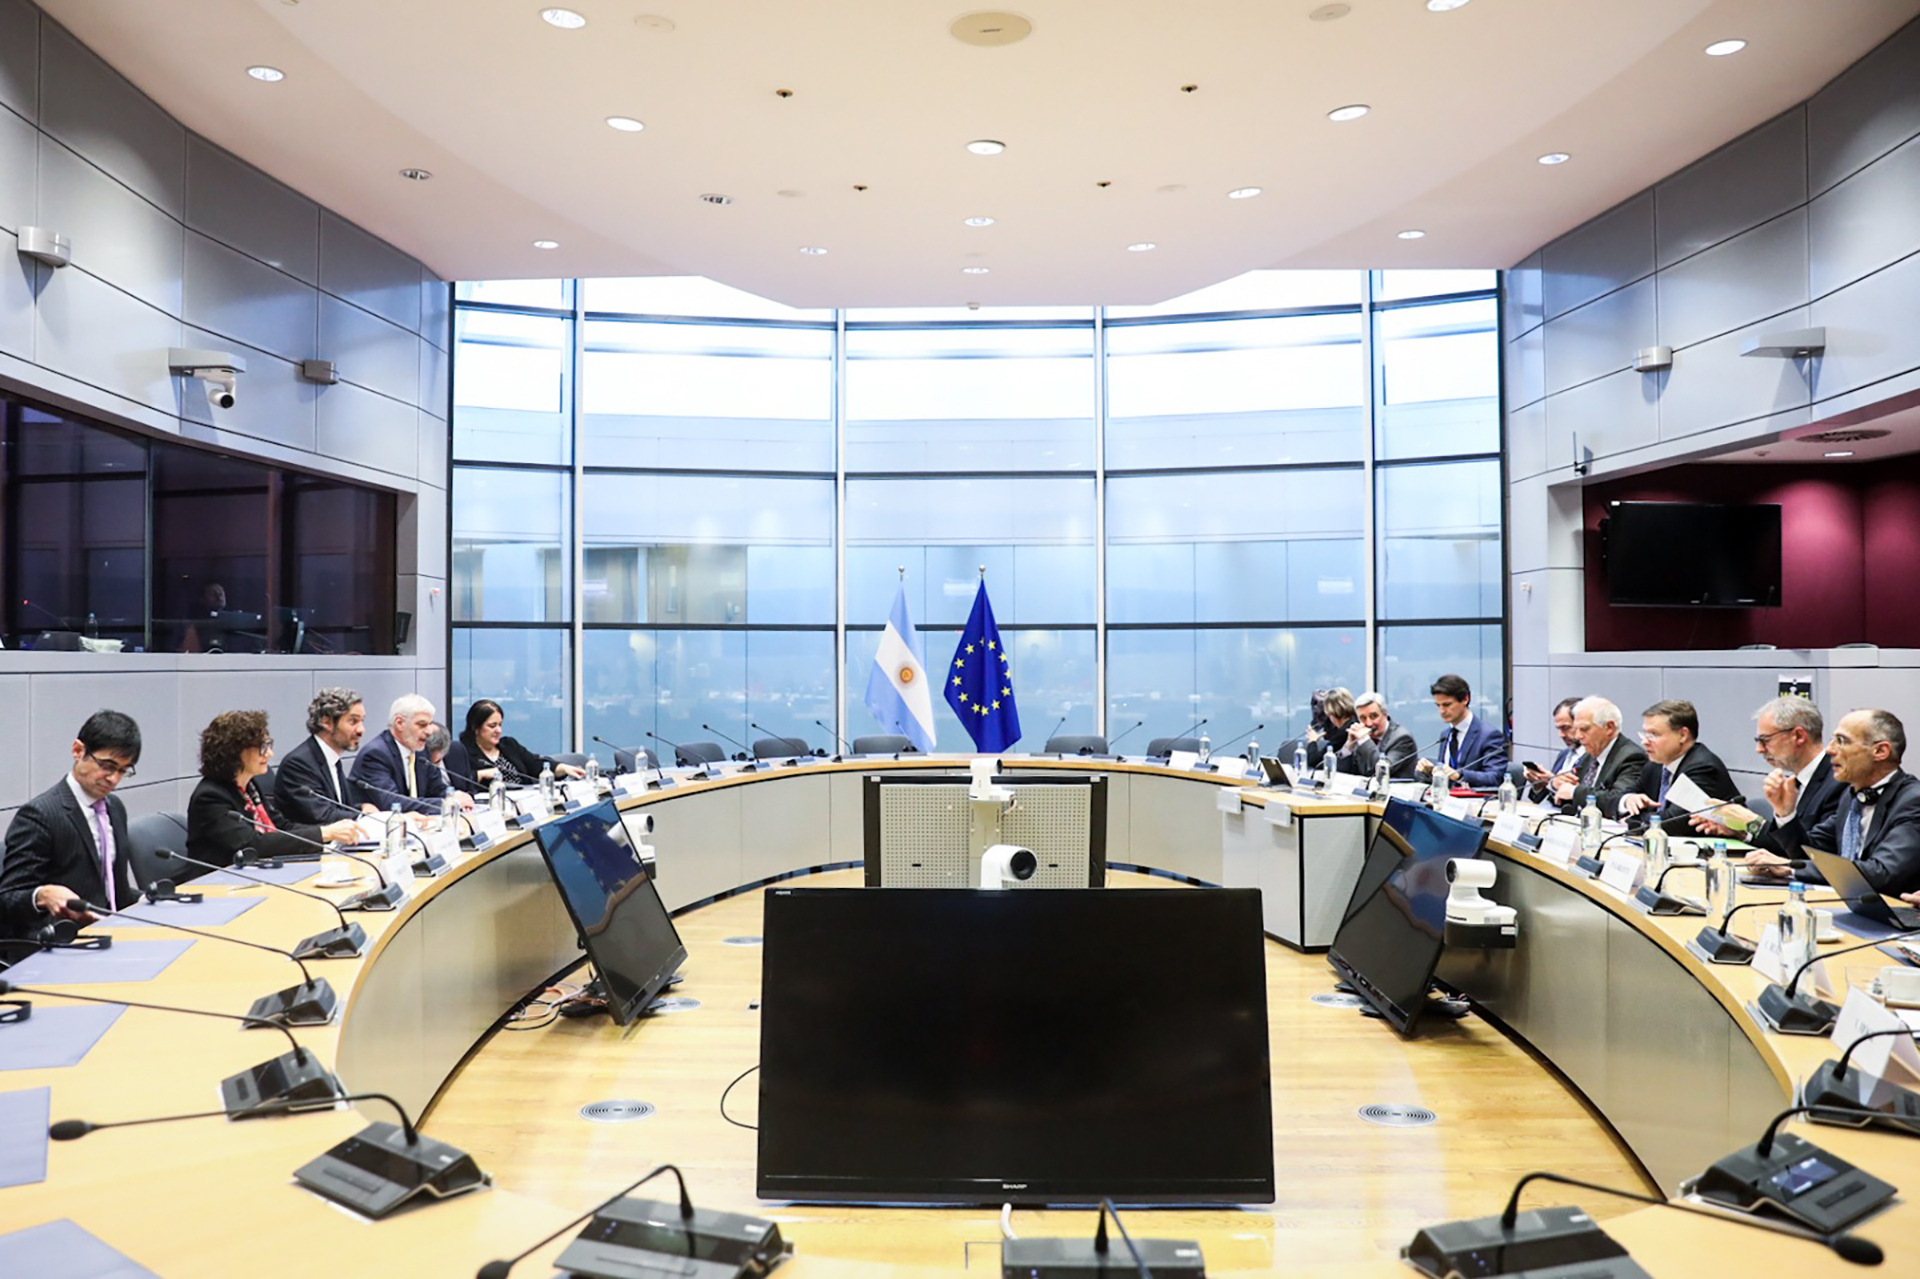 La reunión en Bélgica de los representantes del Mercosur y de la Unión Europea. Acordaron conformar comisiones para destrabar los temas que complican las negociaciones entre los bloques